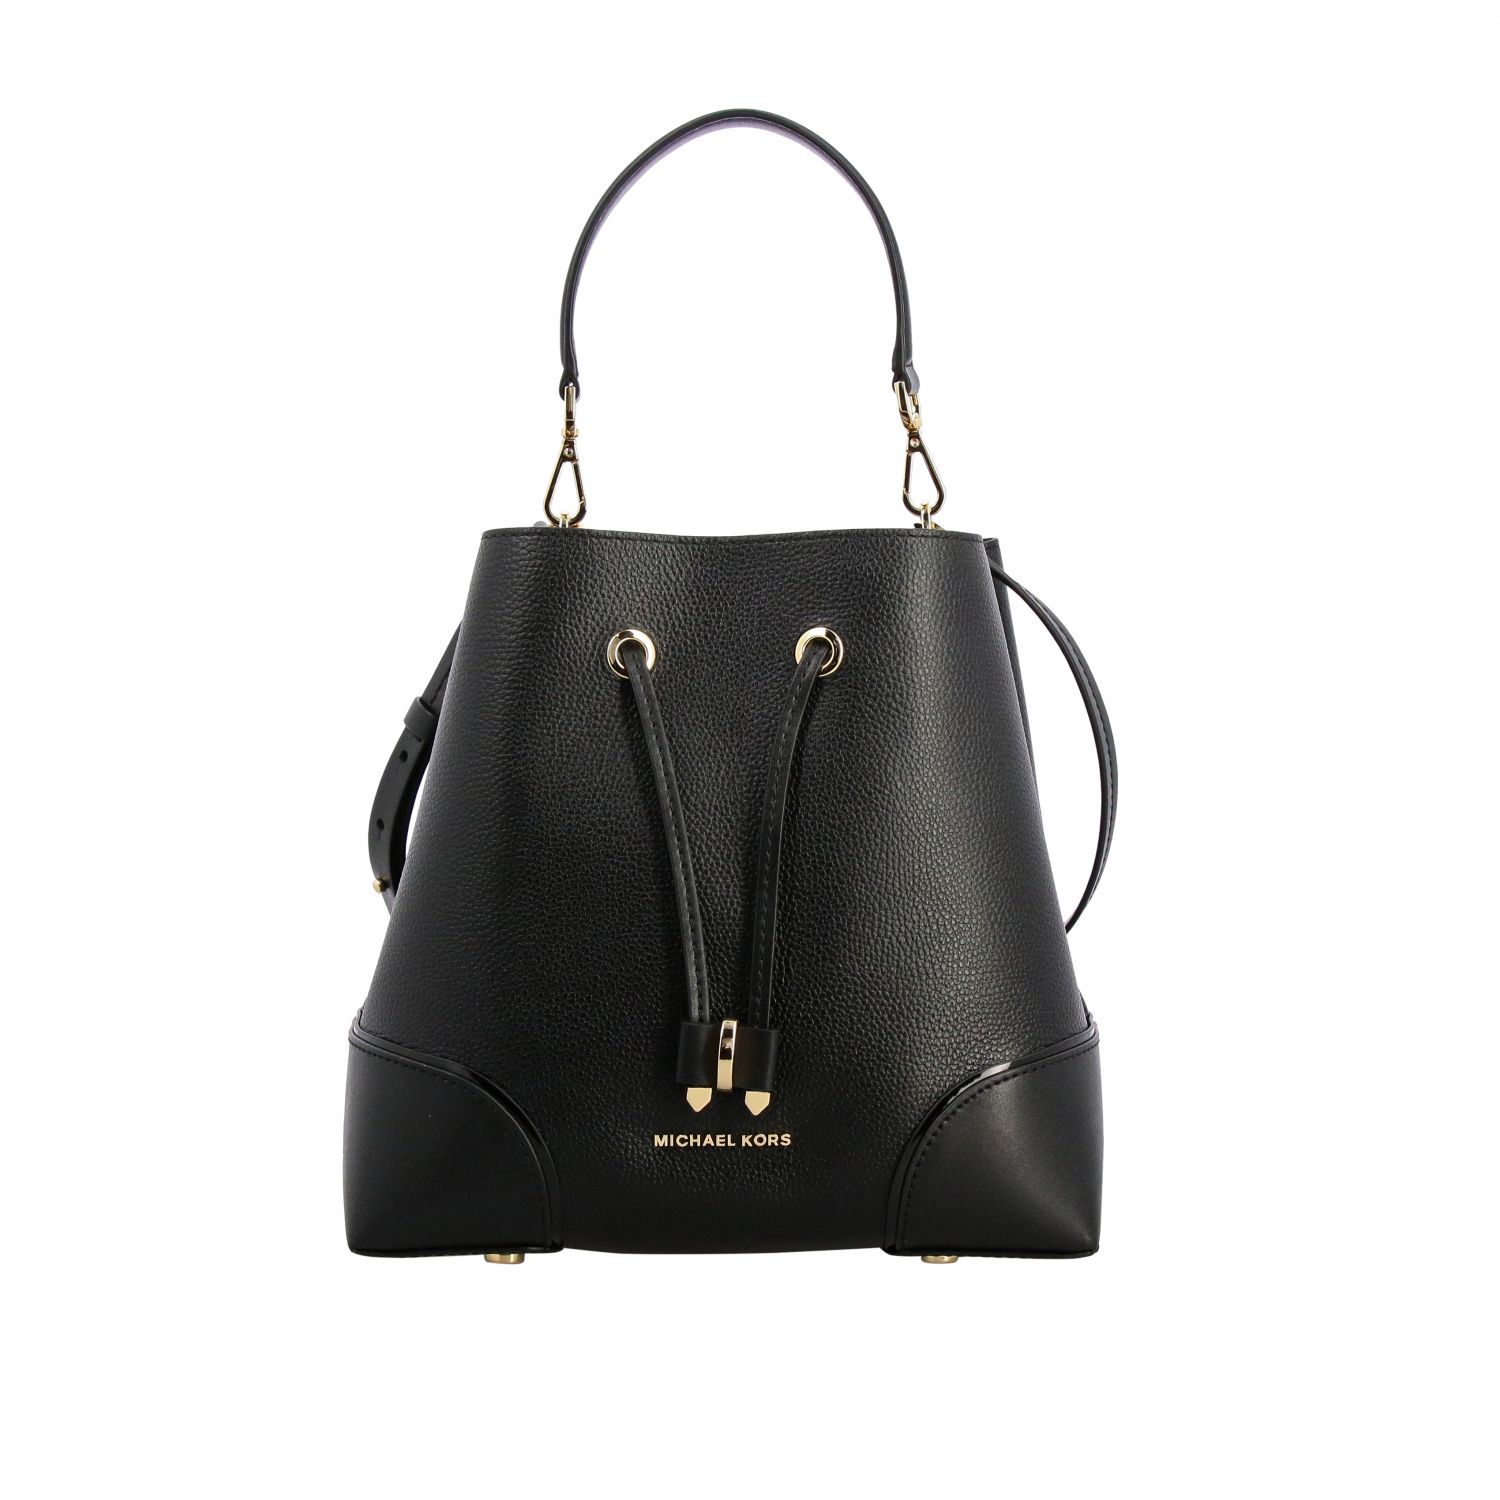 Michael Kors Outlet: Delaney Michael medium leather bag - Black ...